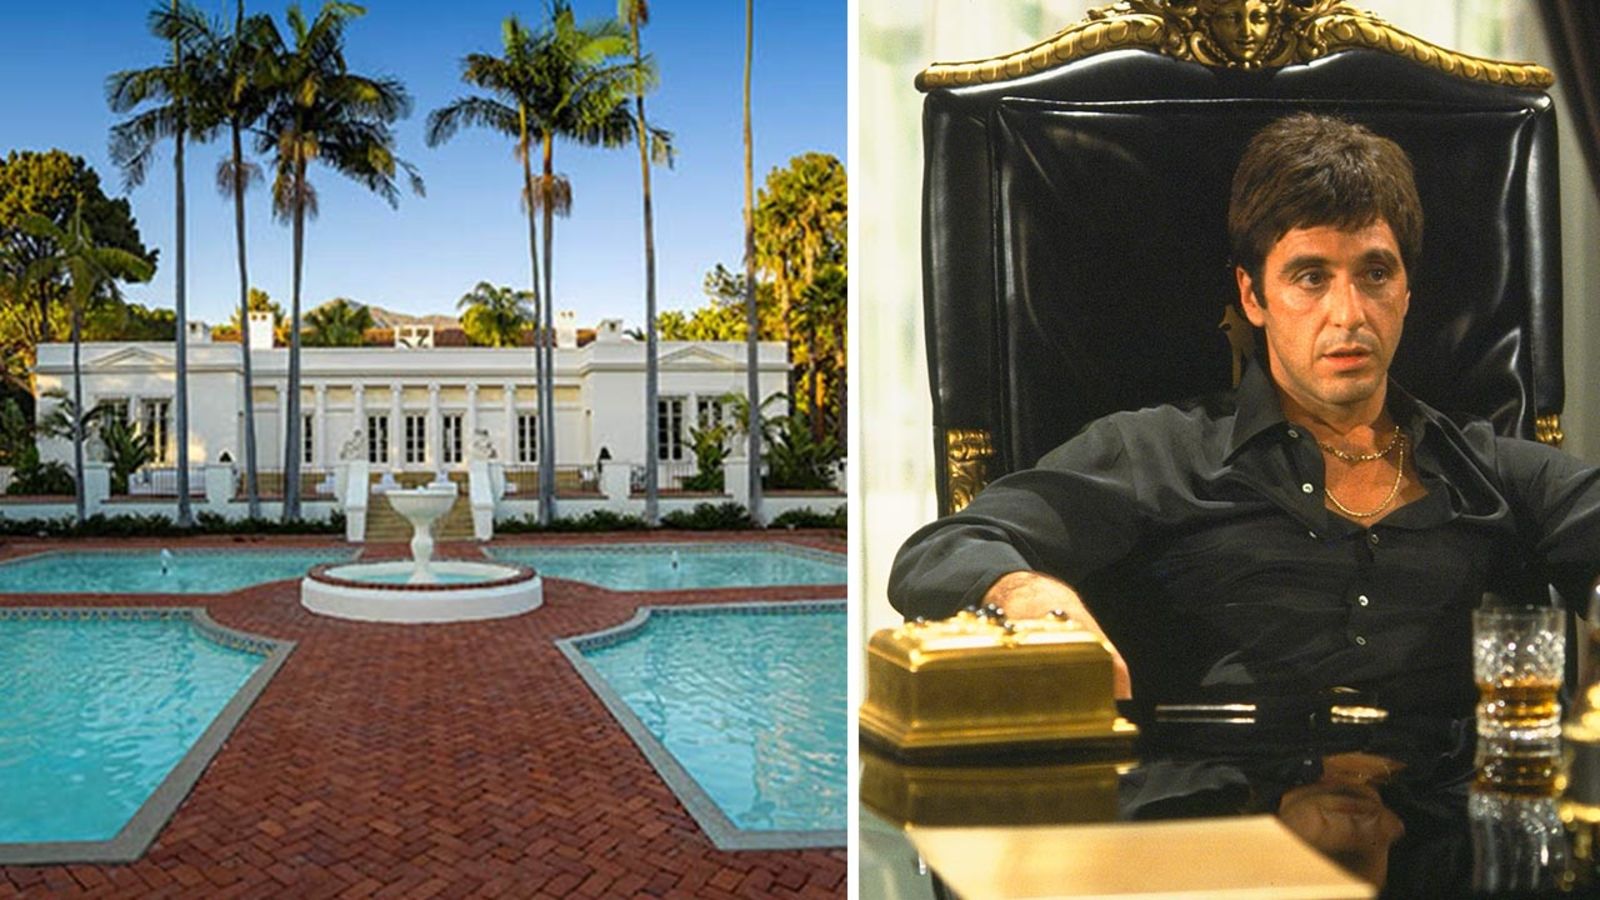 Muchacho se compra la mansión de Tony montana por 40 millones de dólares